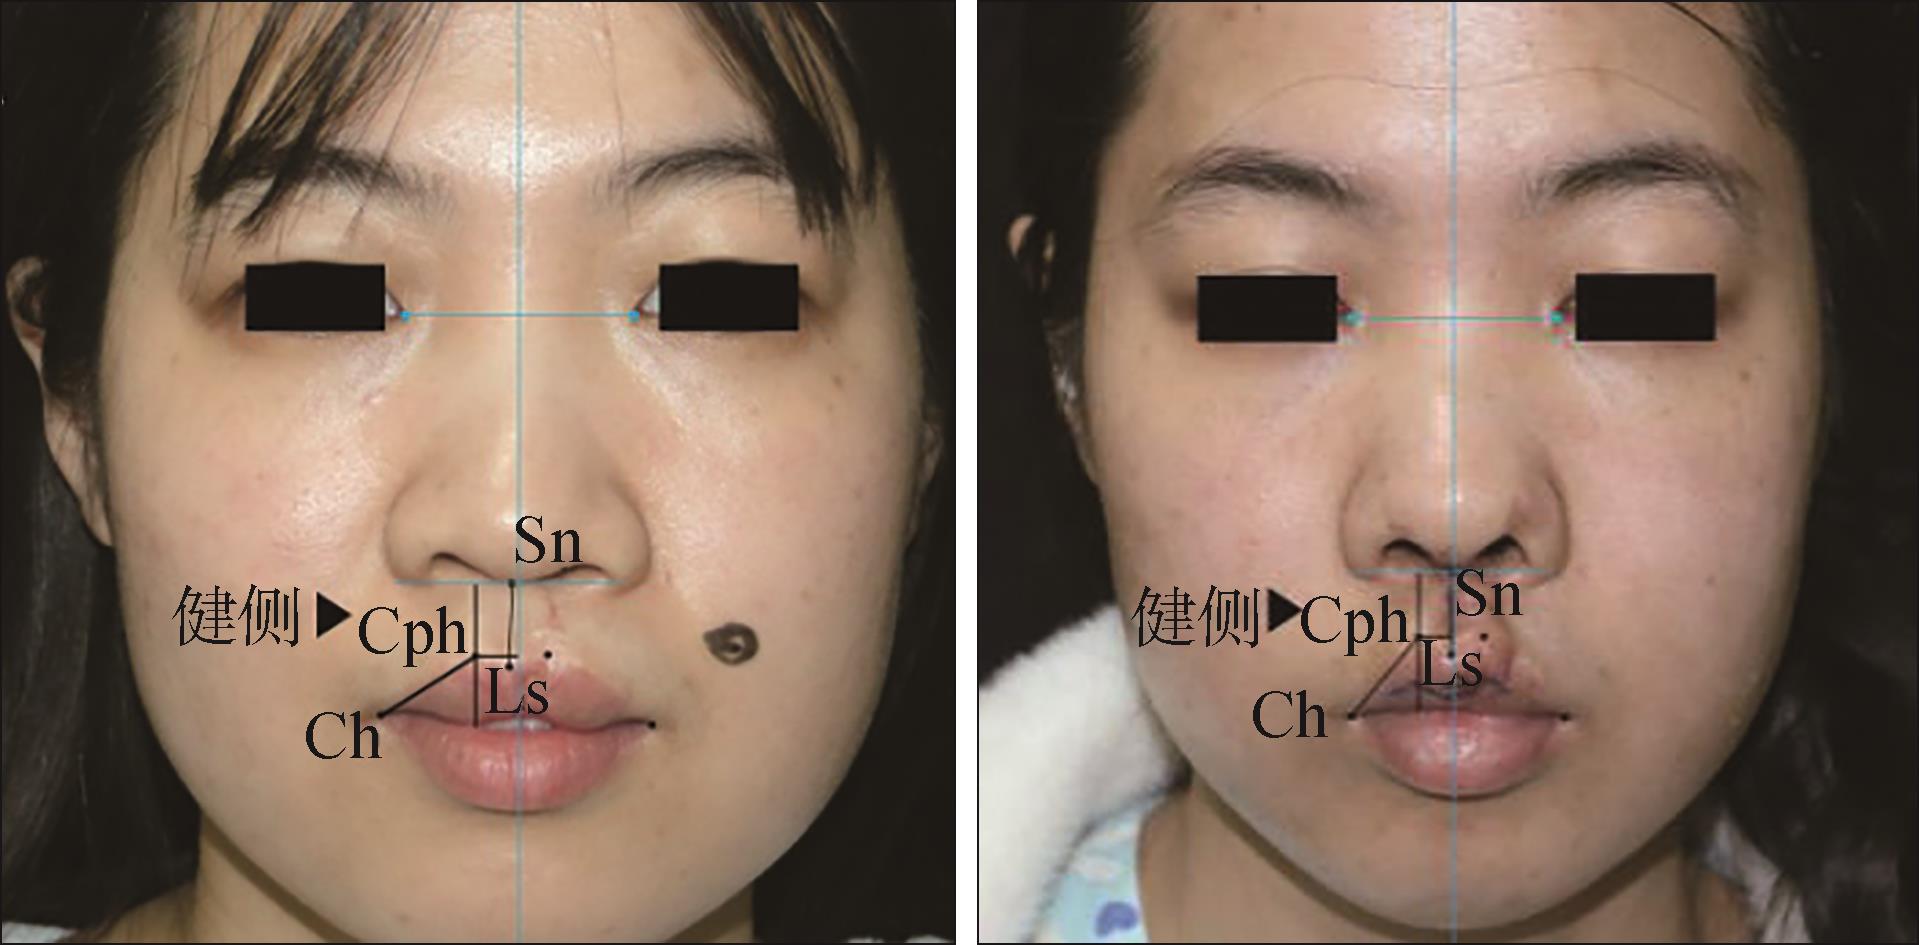 唇裂I期后遗留的各种畸形及唇裂II期疤痕畸形的修复 - 知乎